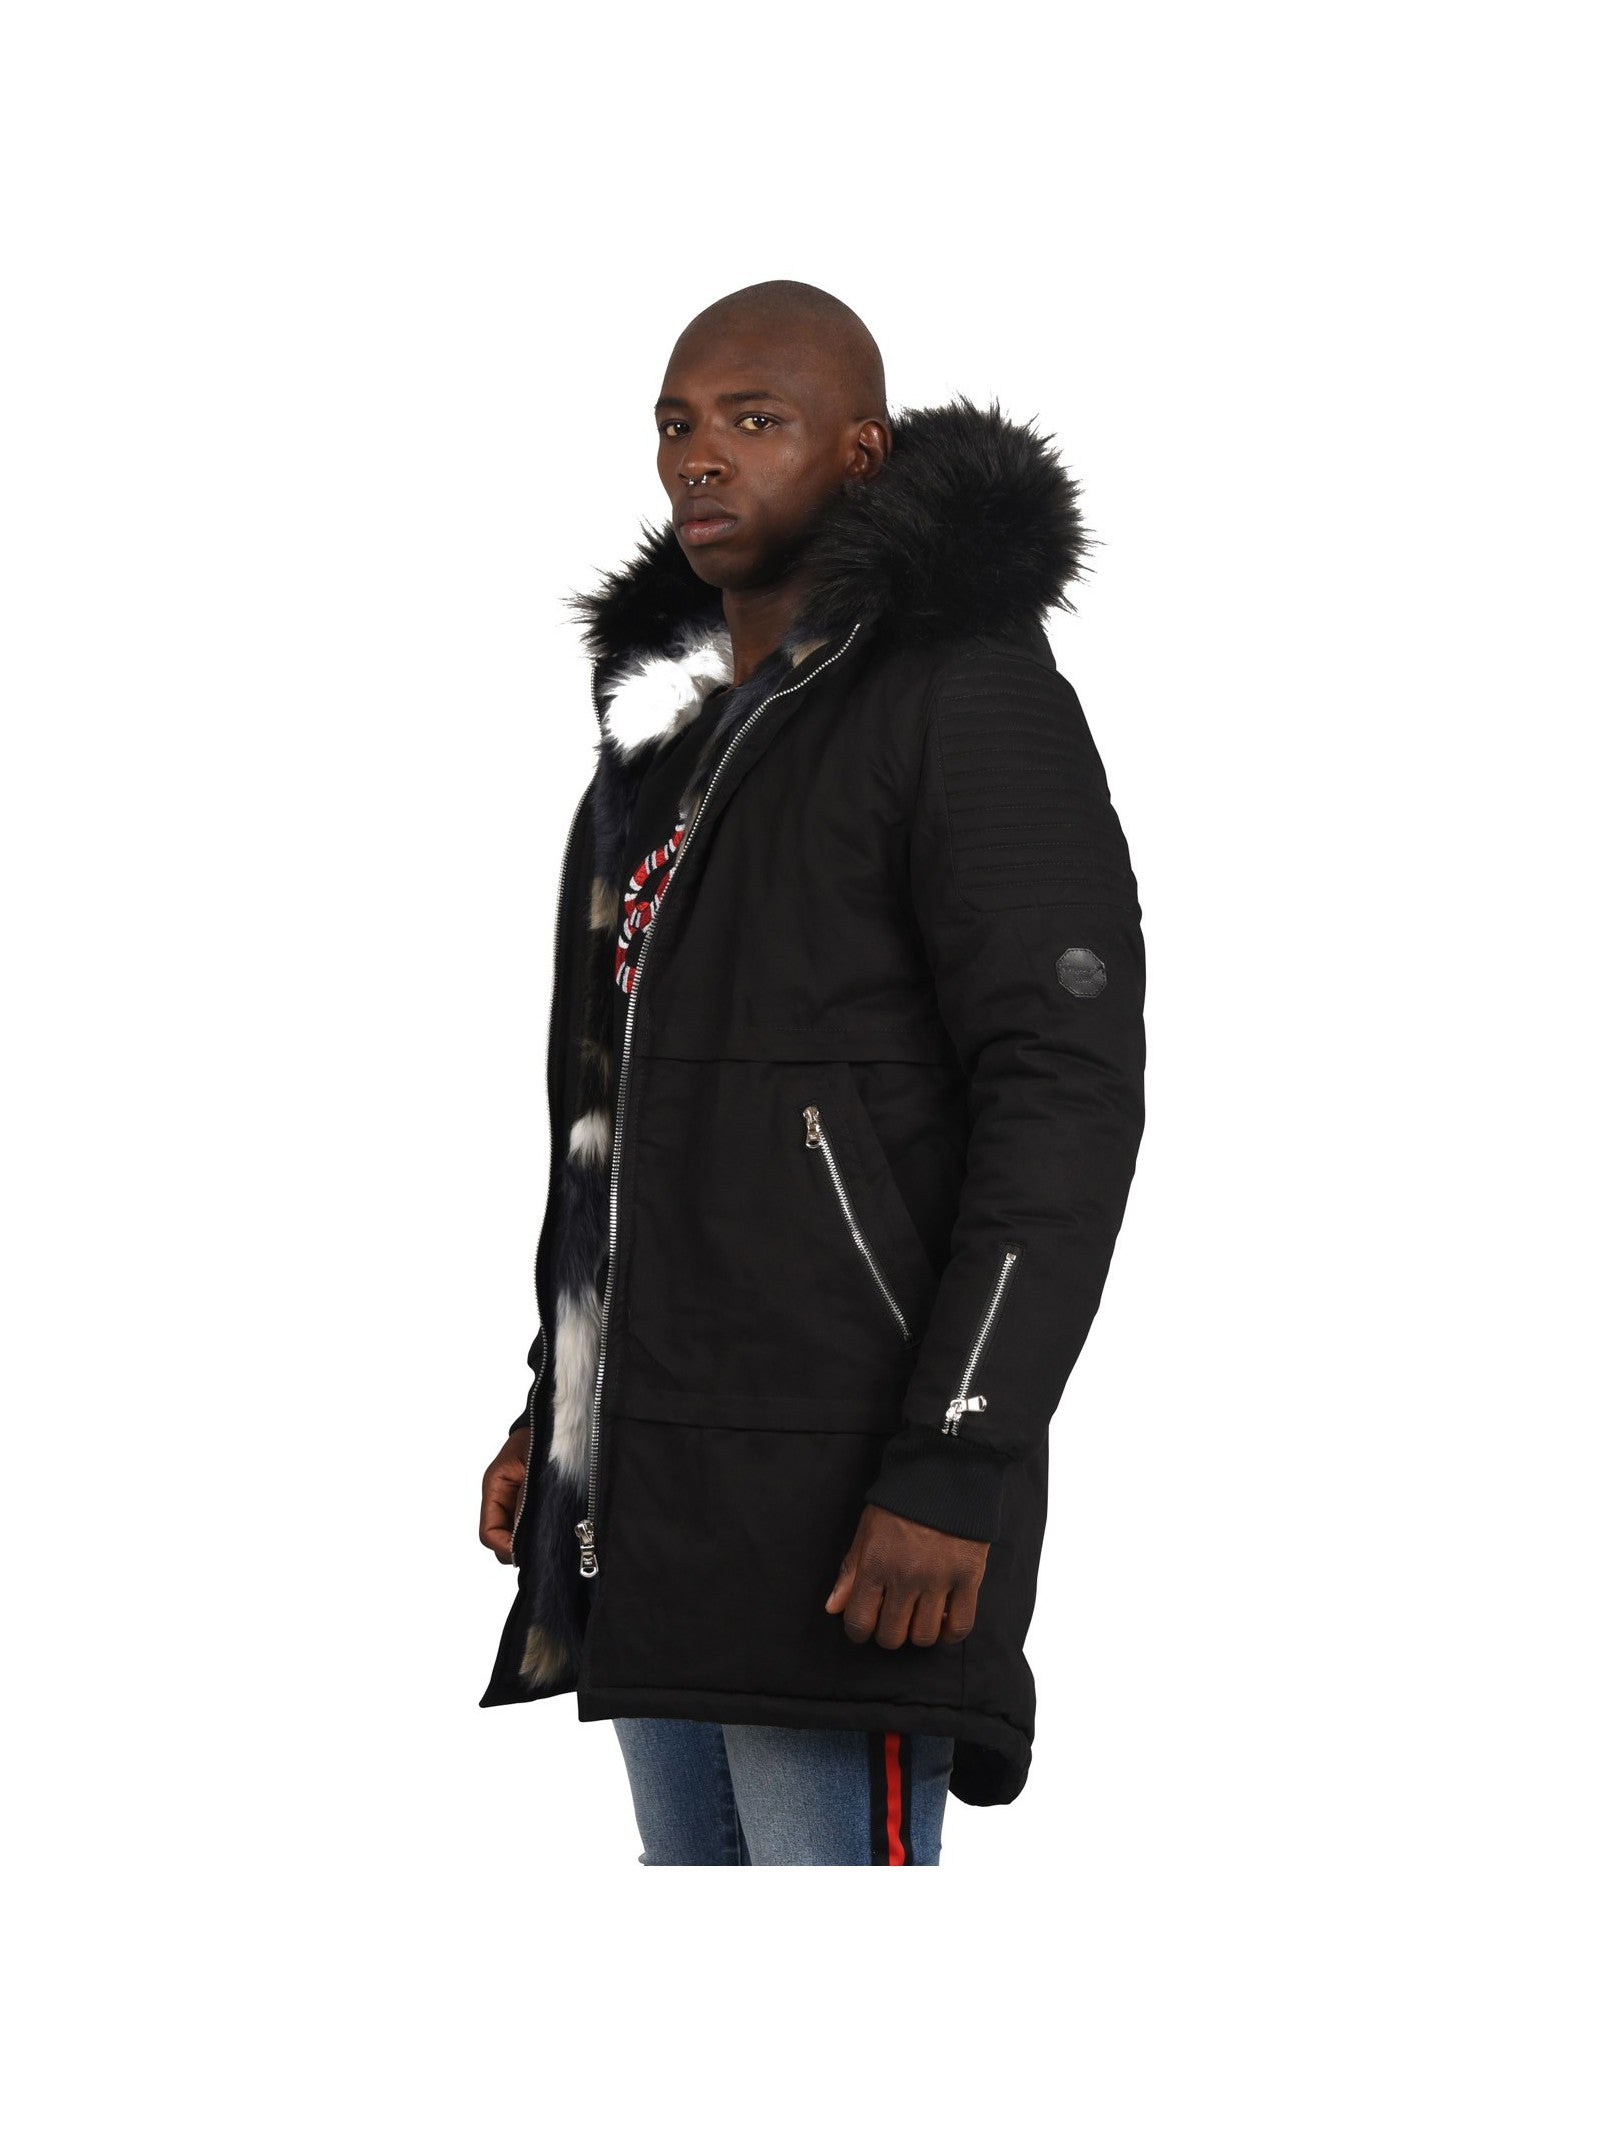 Men's Cotton Parka Jacket by Project X Paris - Brit Boss 